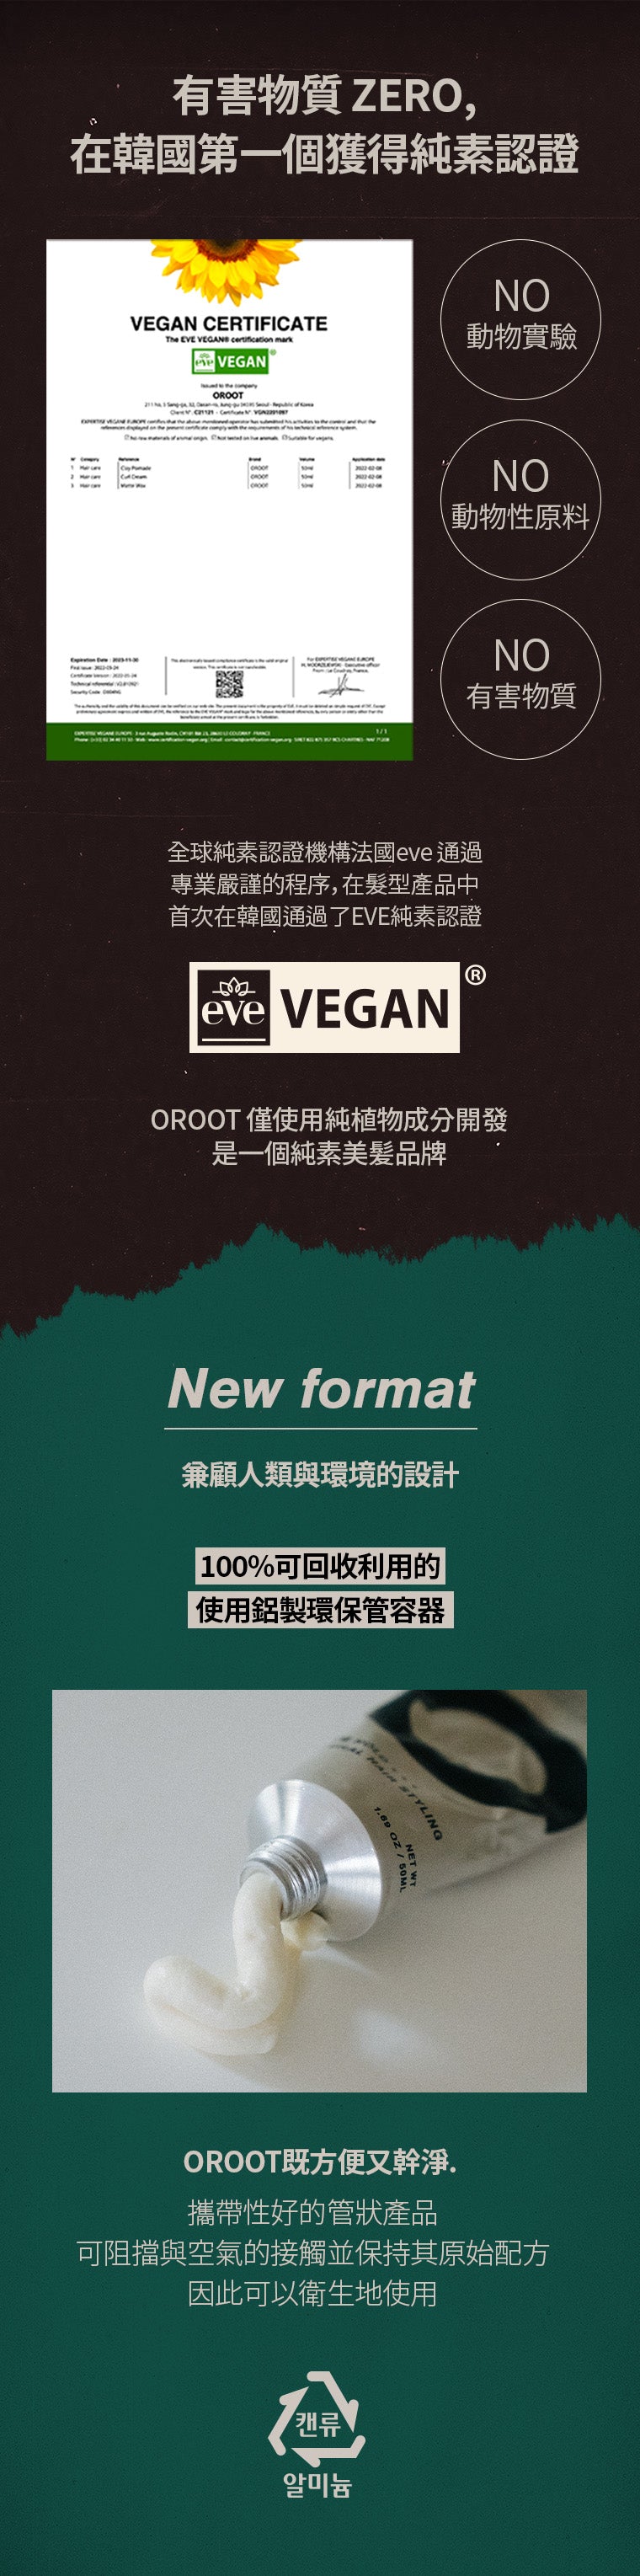 OROOT Vegan認證